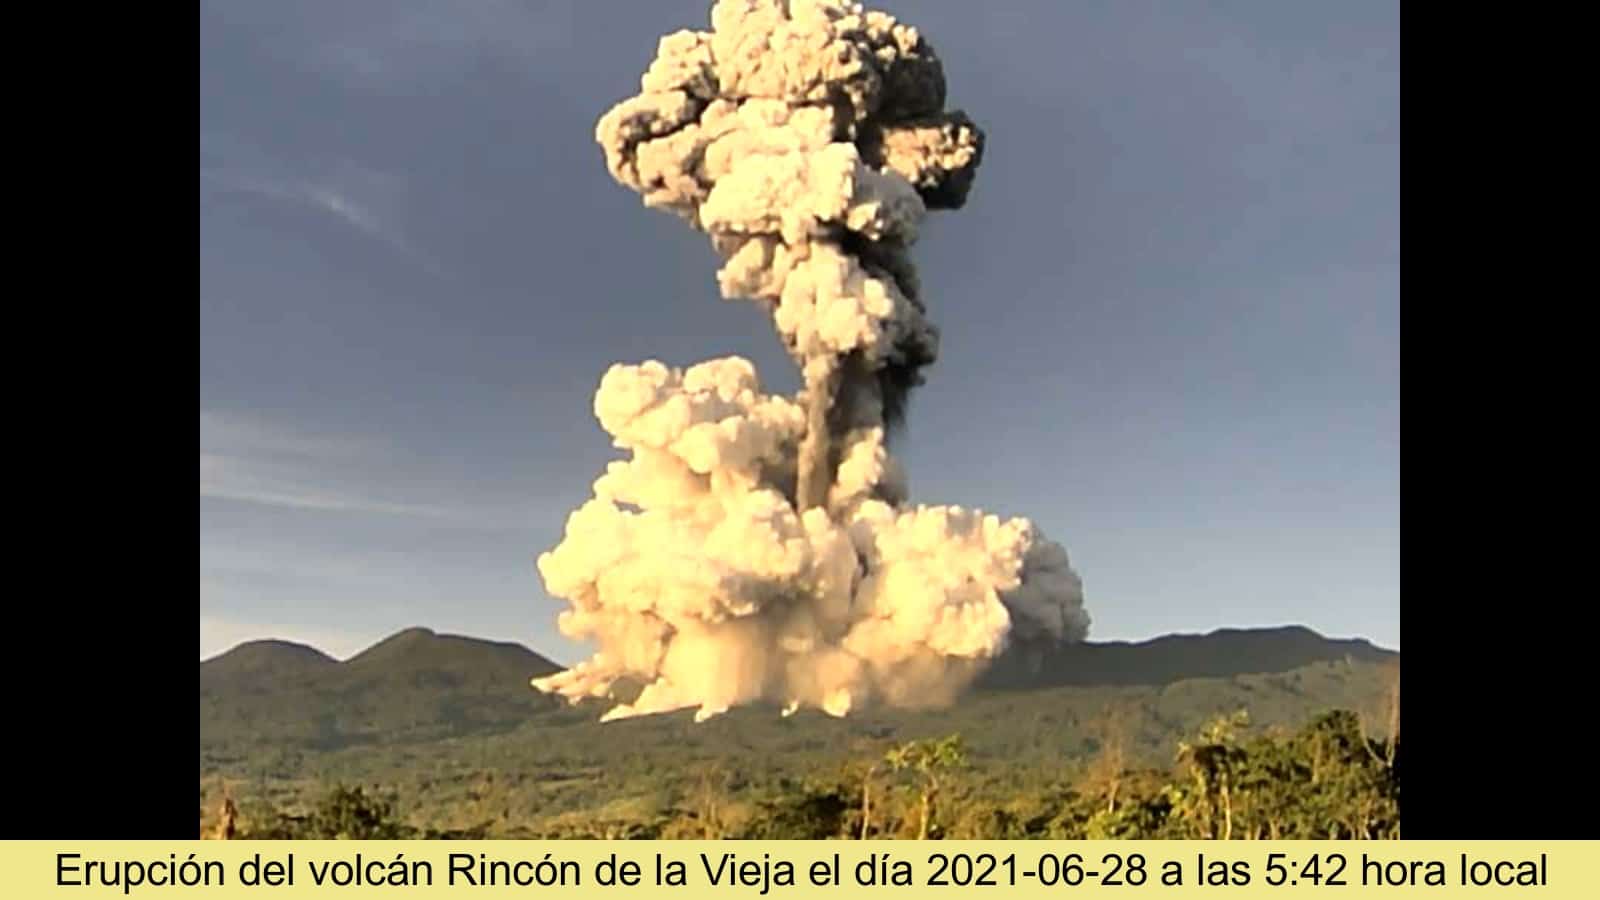 Rincon de la Vieja Volcano in Costa Rica erupted on June 28, 2021.